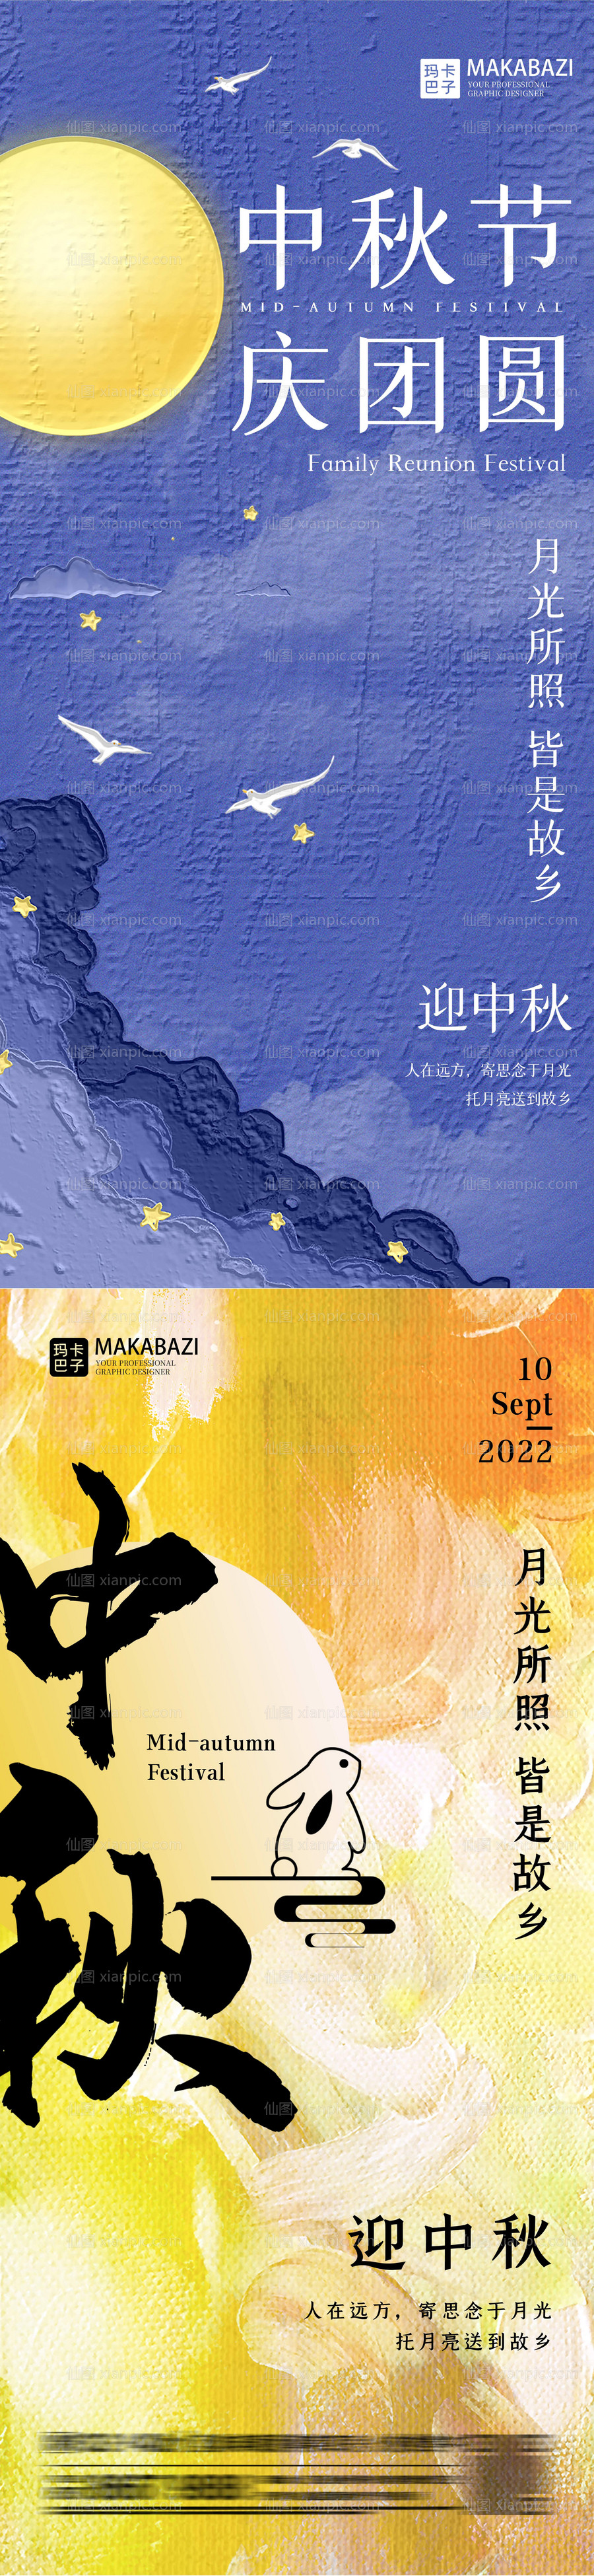 素材乐-中秋节油画创意系列海报